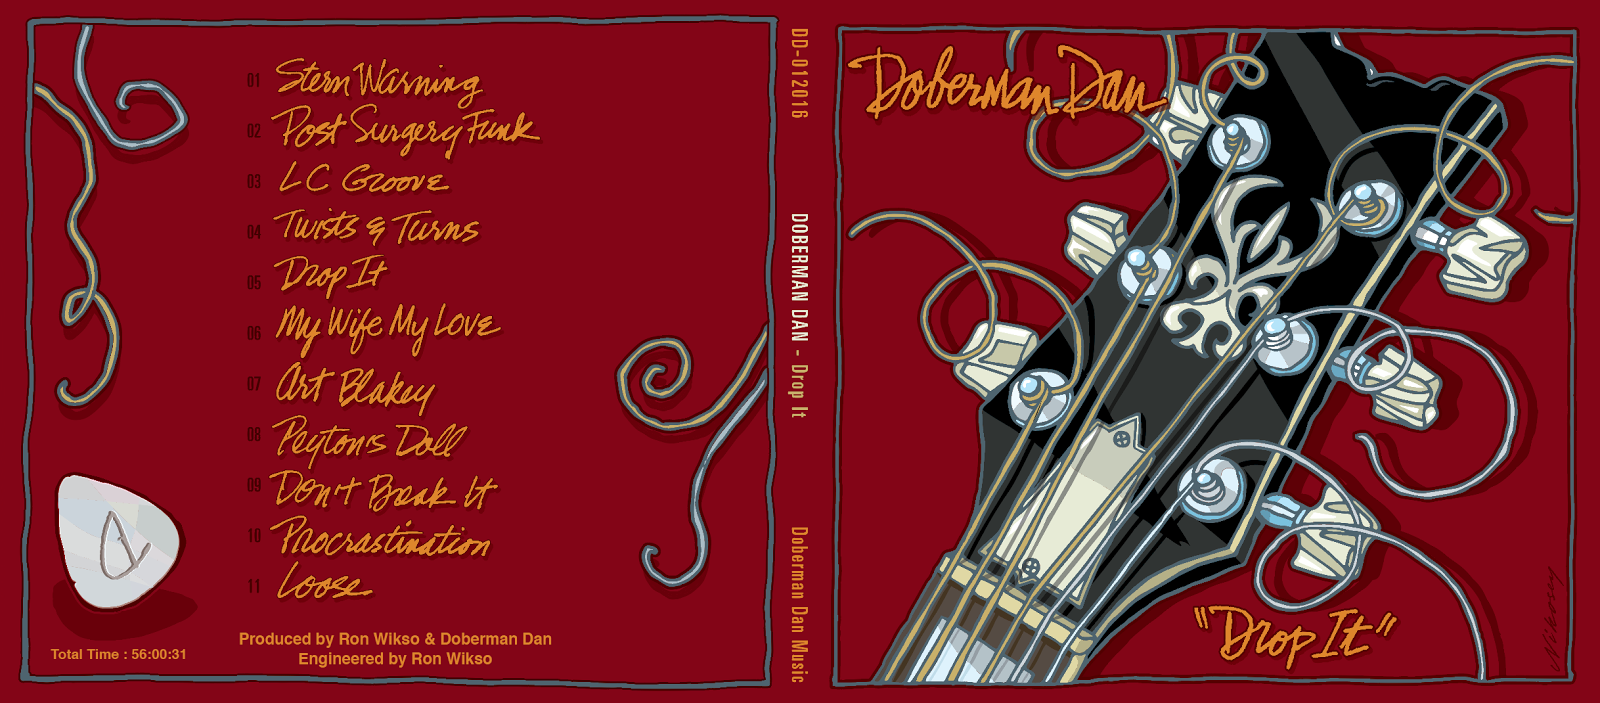 Doberman Dan (Dan Gallapoo) Drop It - Front and Back Cover